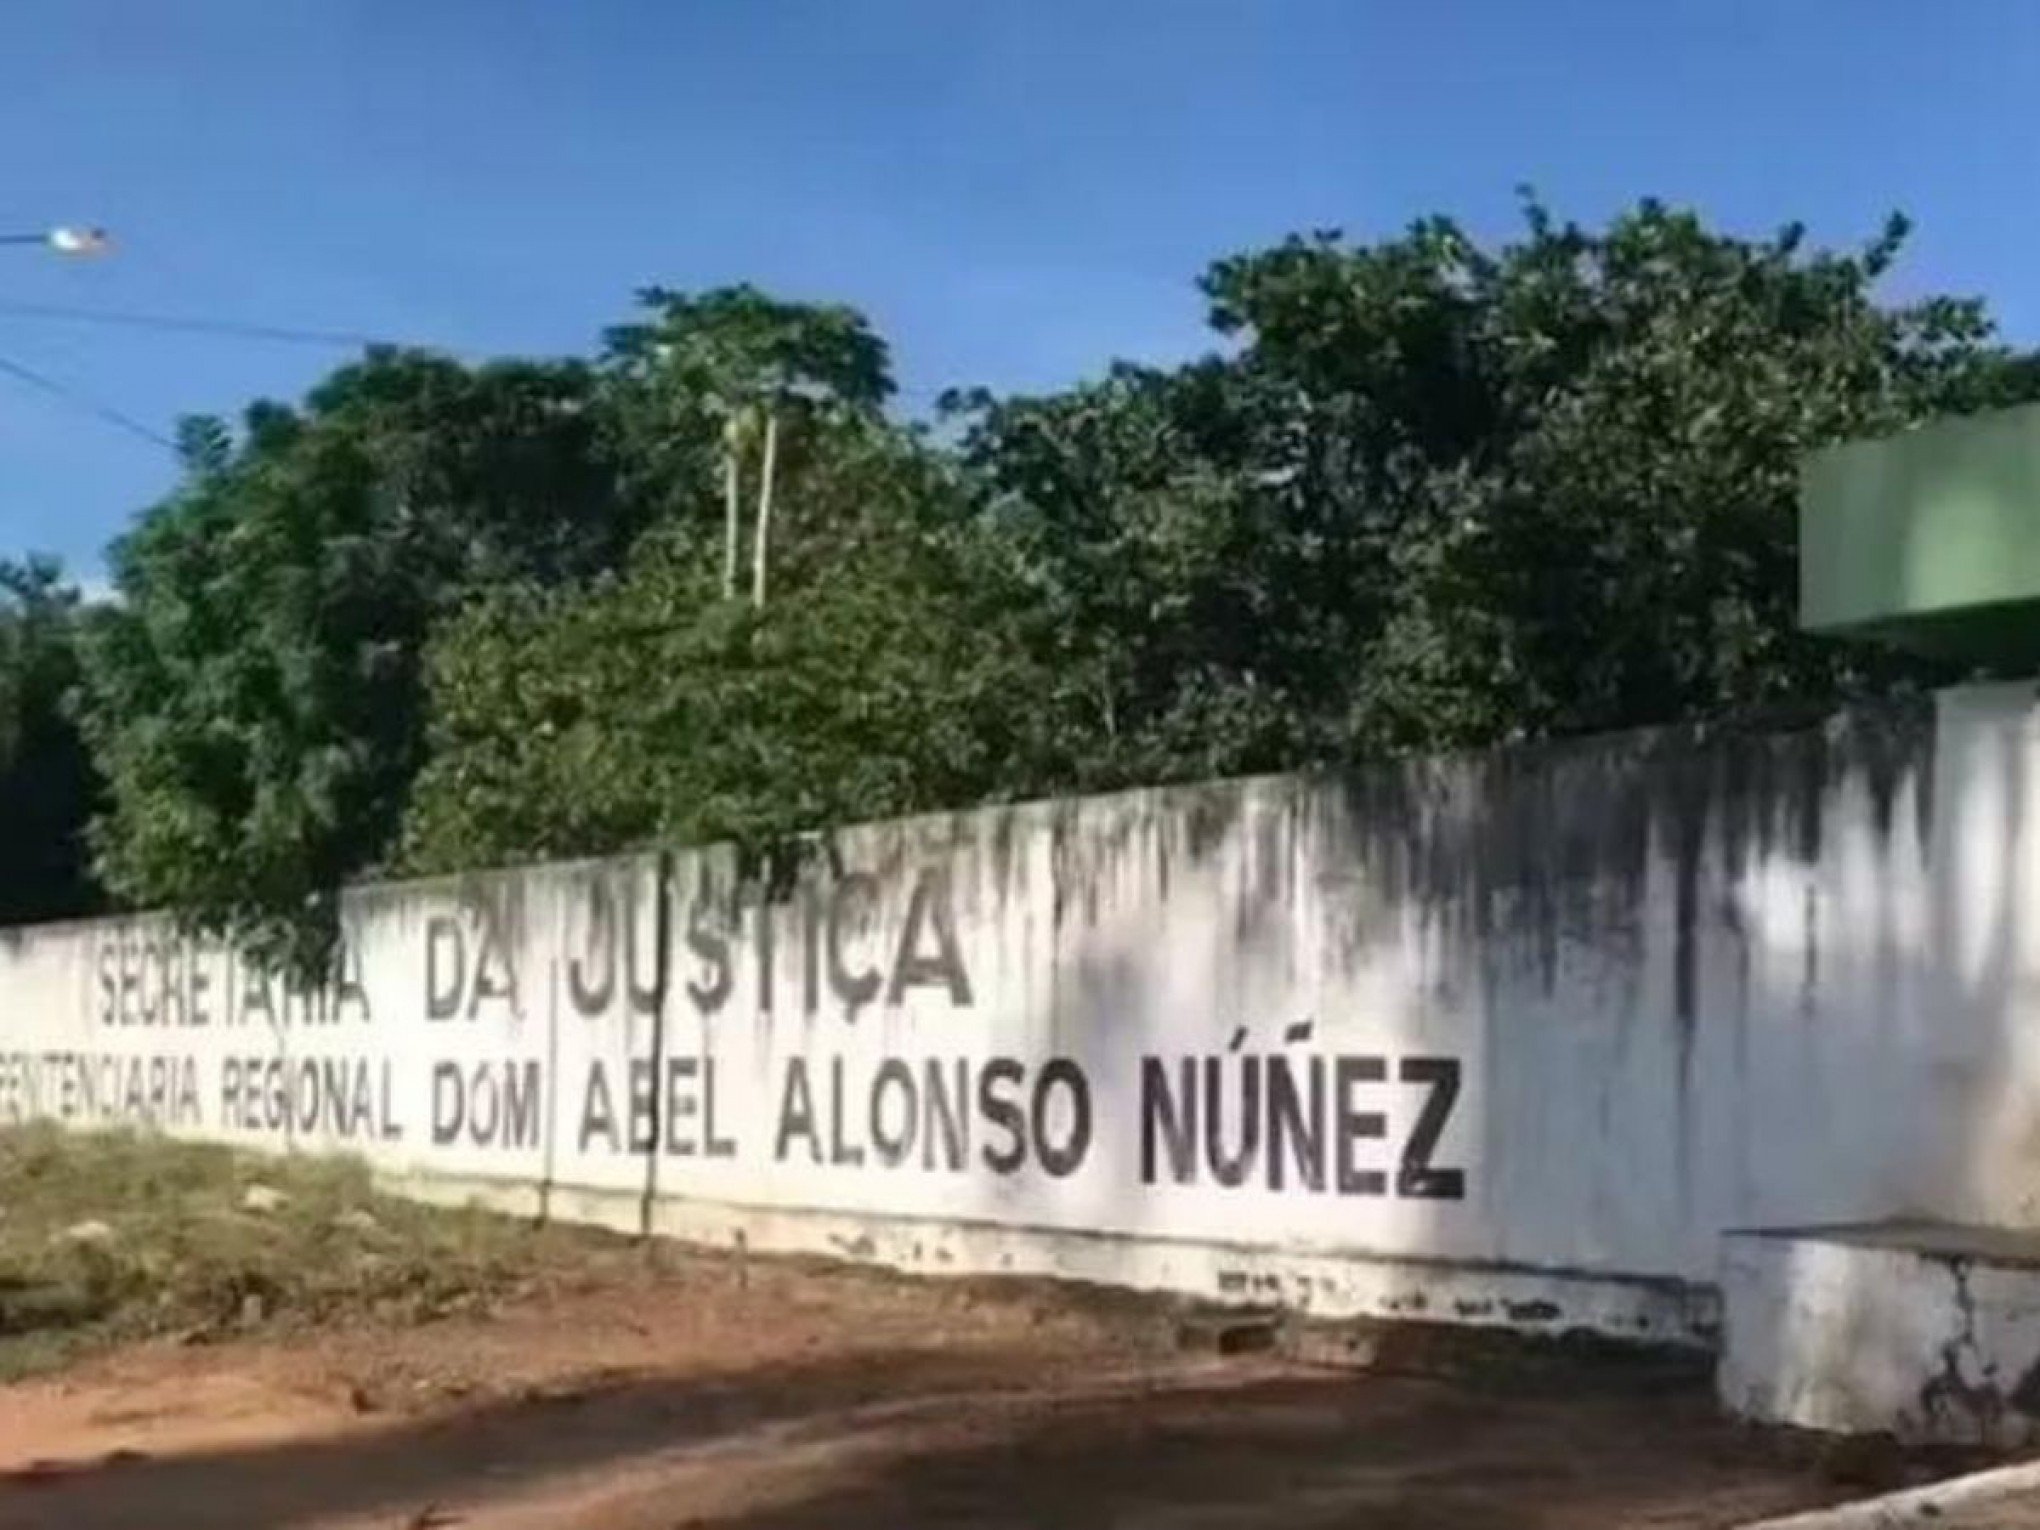 Dezessete detentos fogem de penitenciária no Piauí